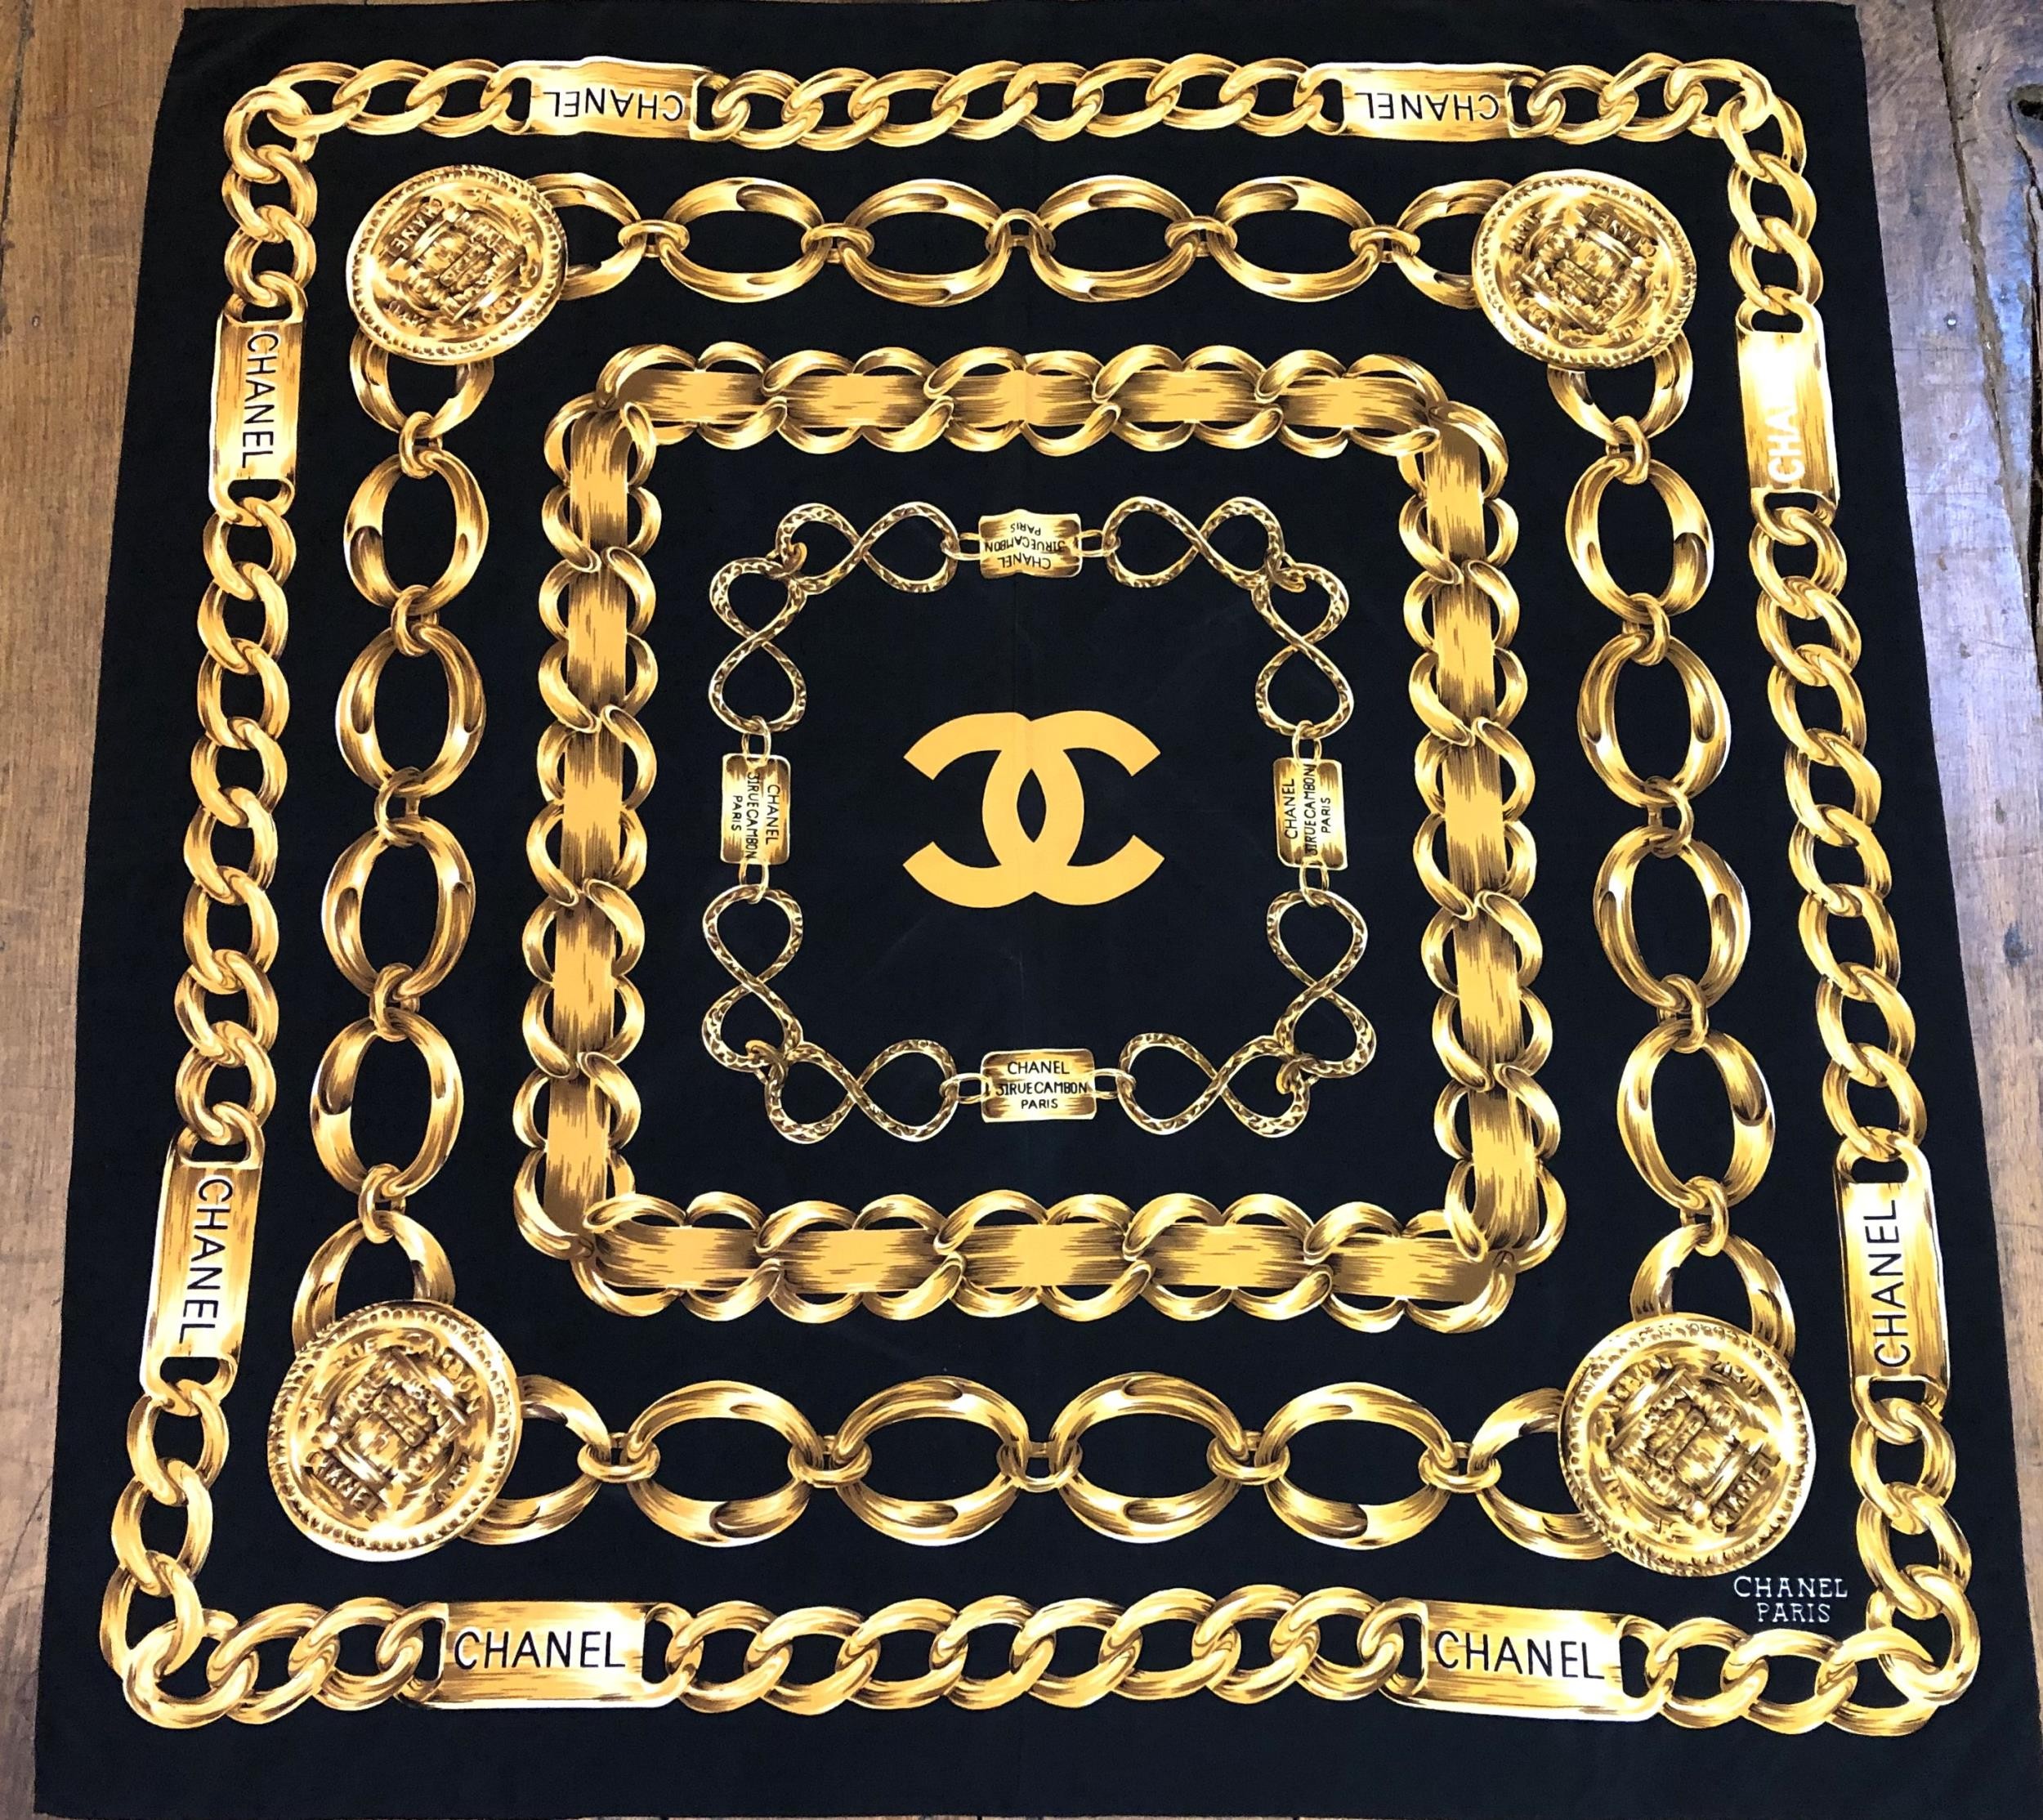 A Chanel scarf